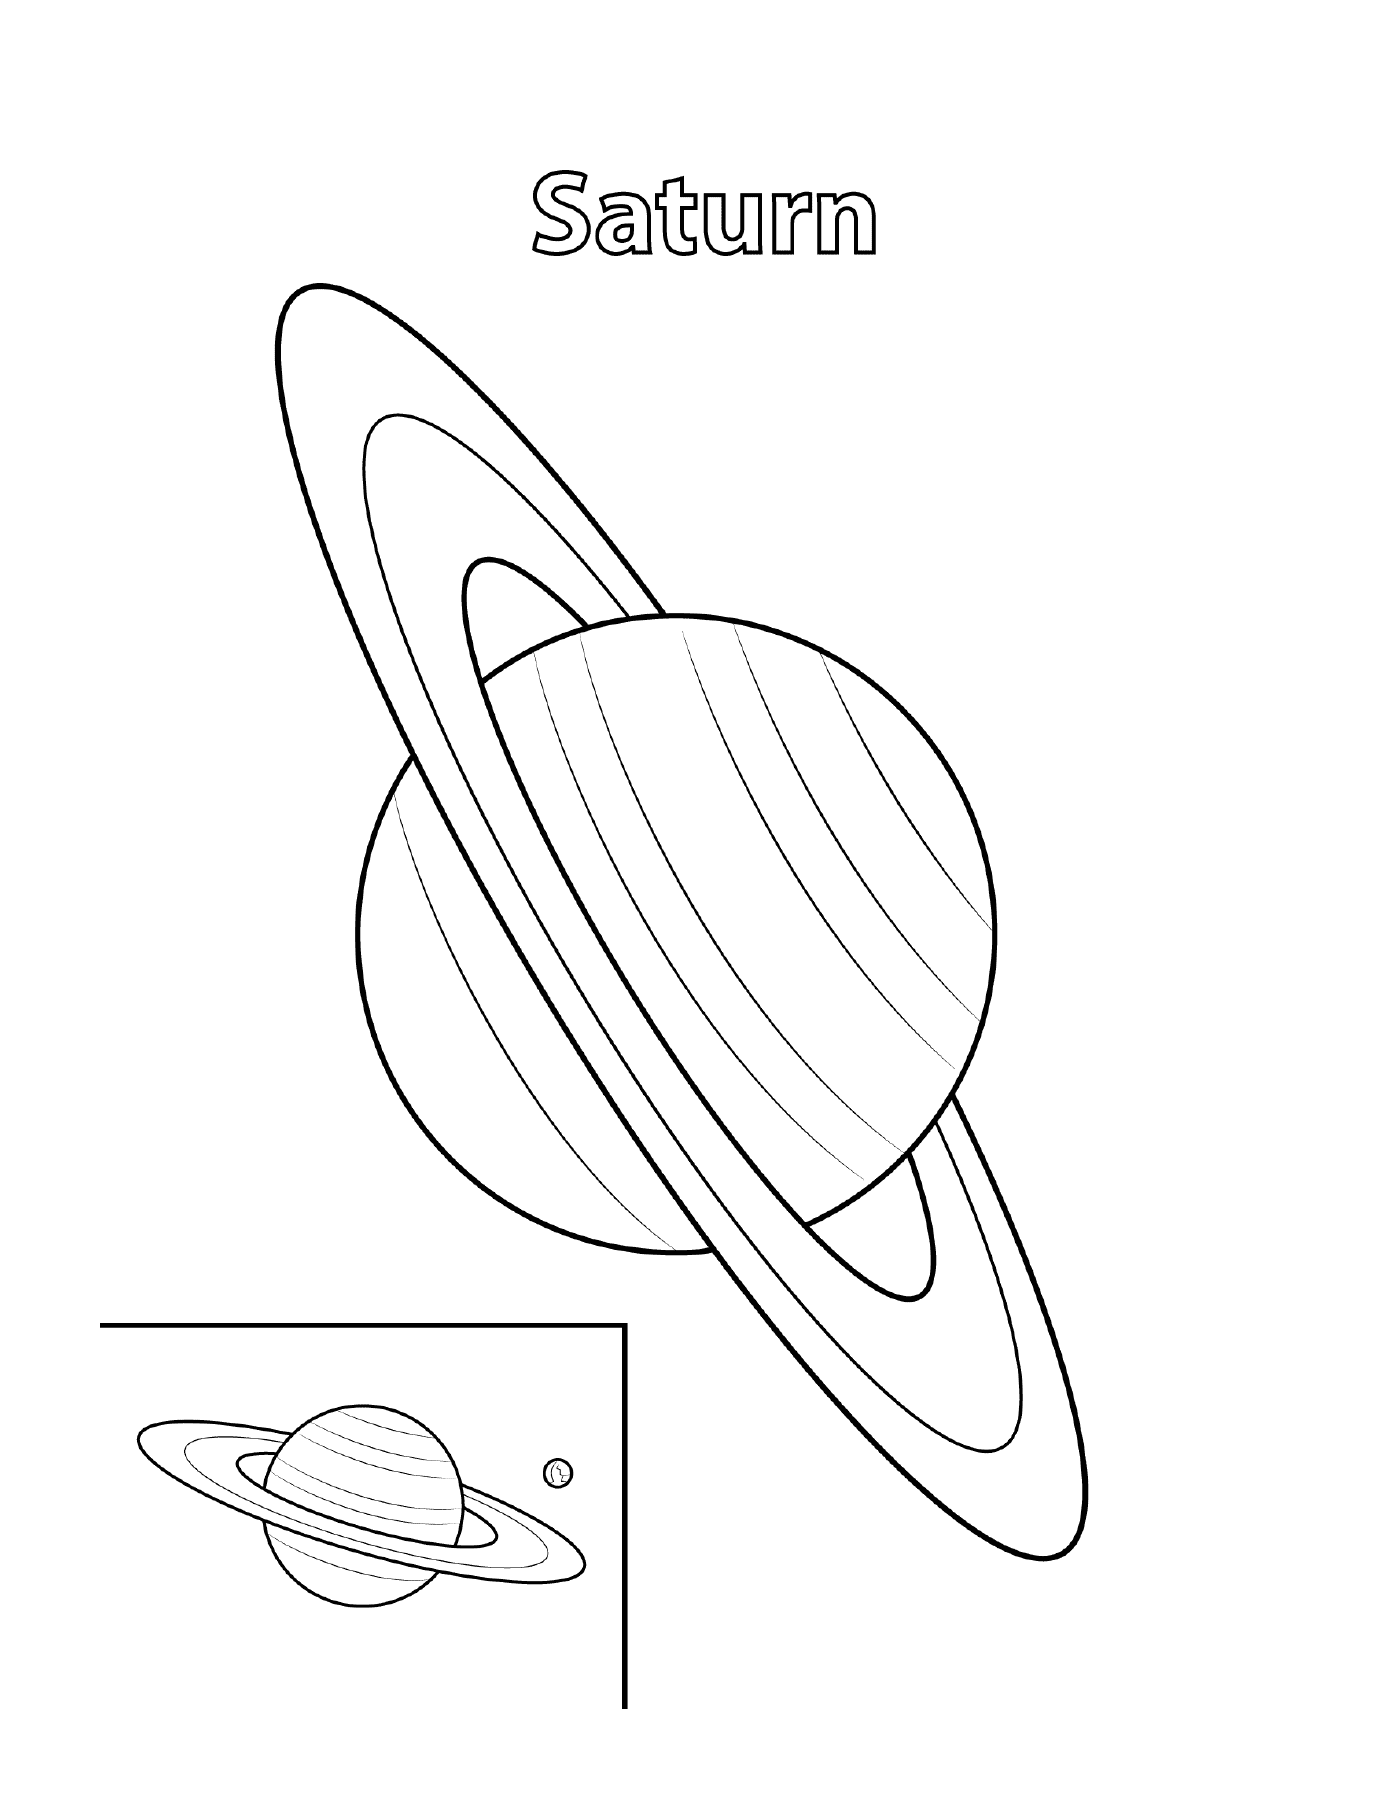  Contorno de Saturno con inscripción 